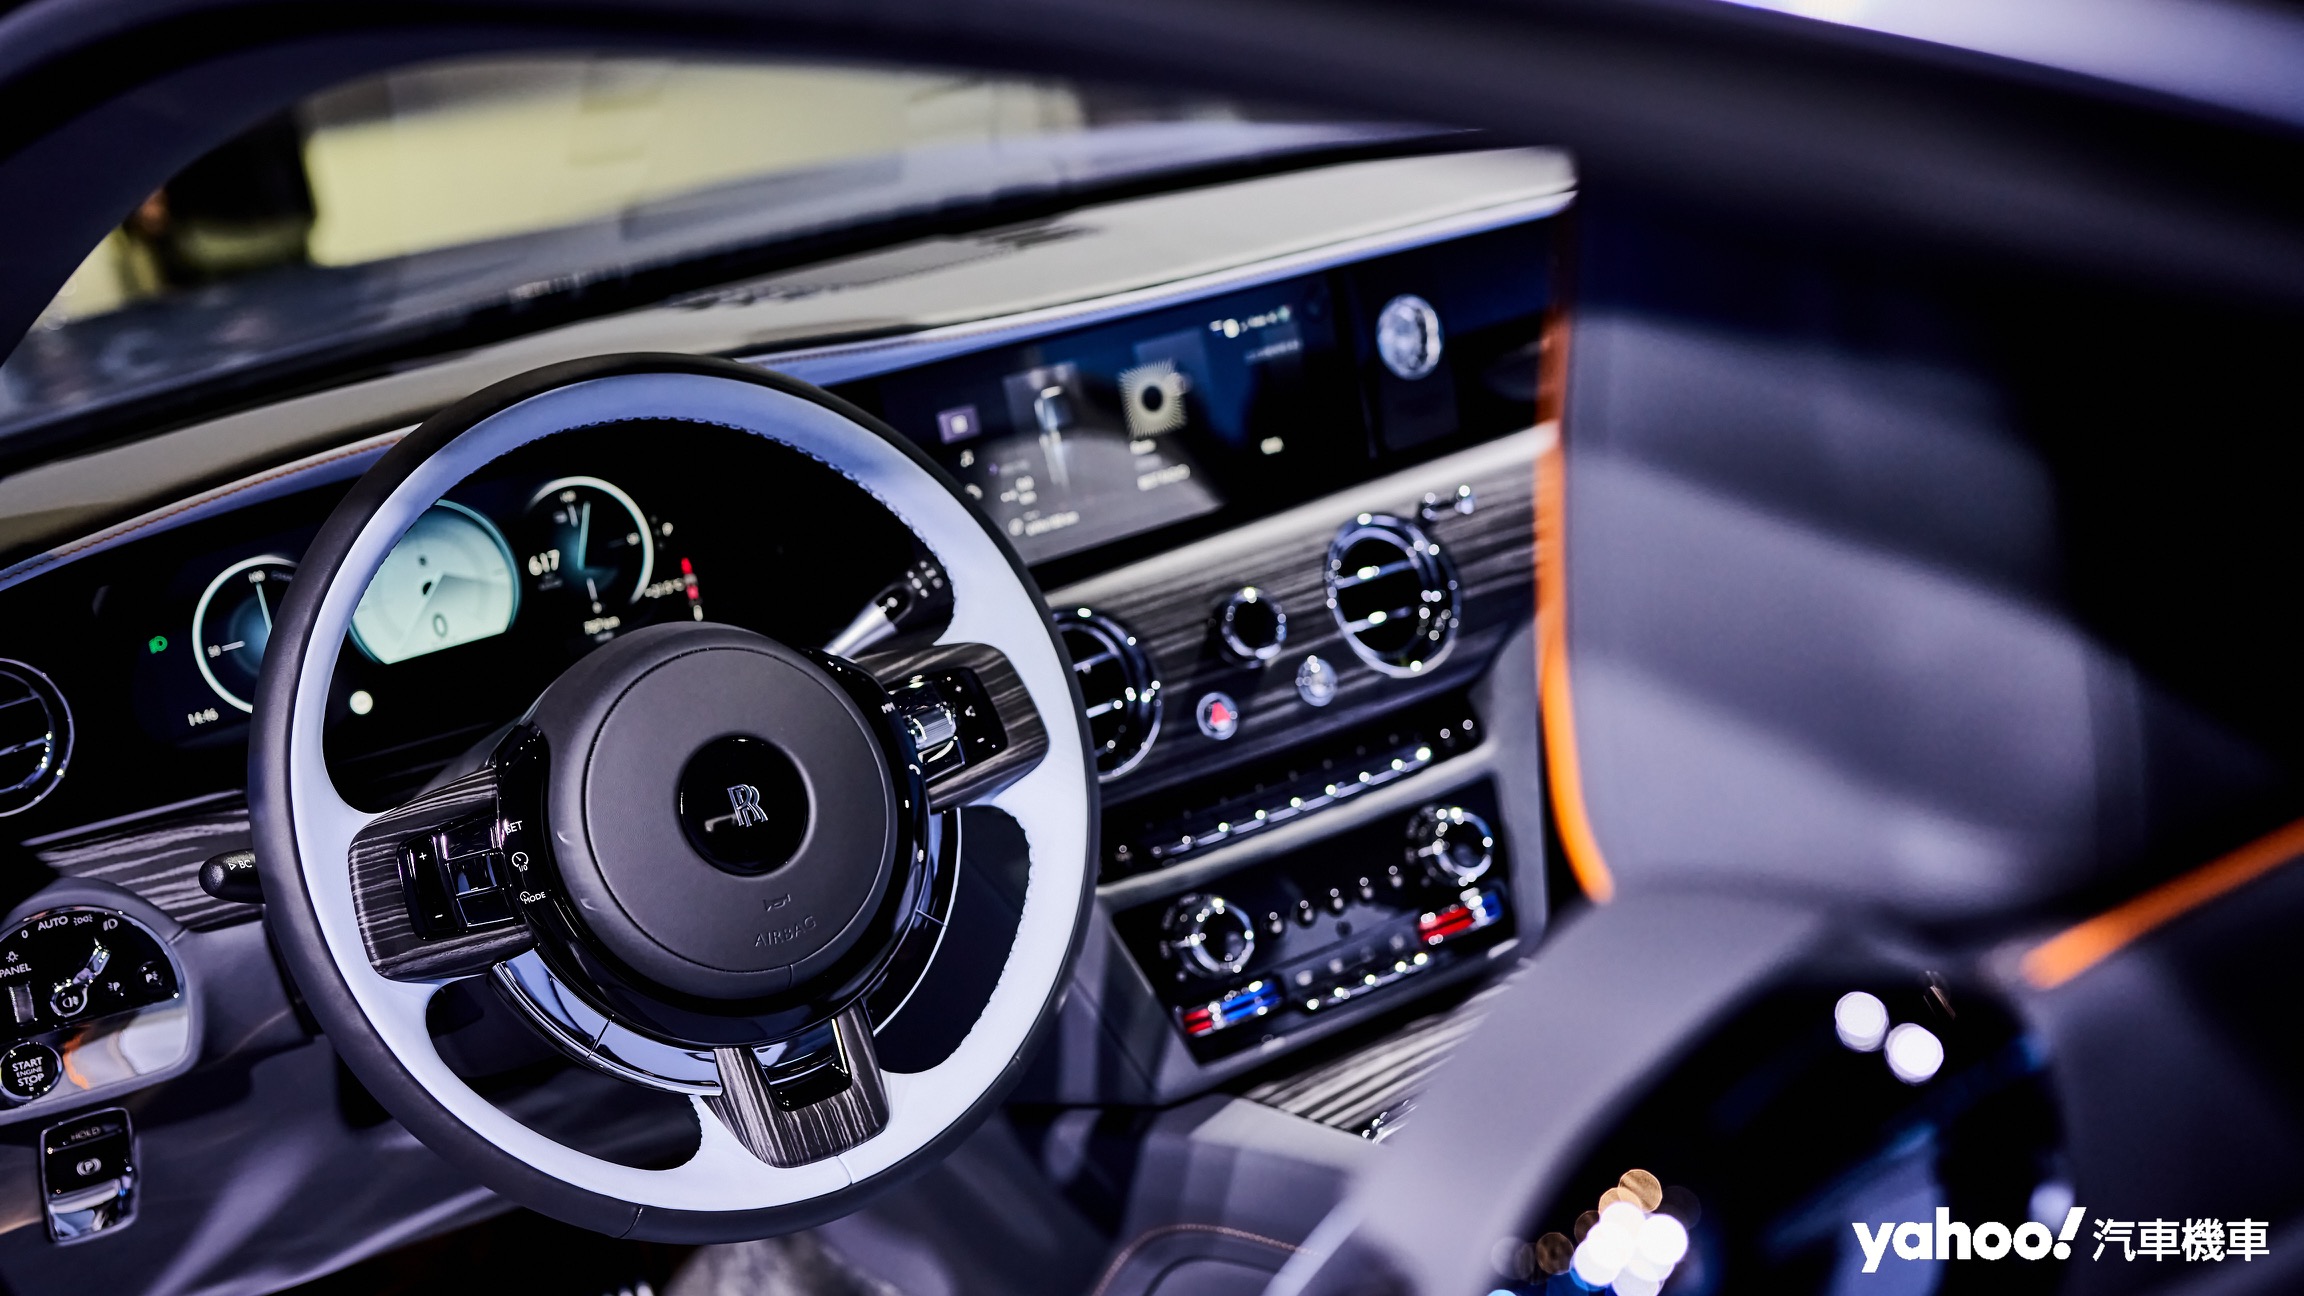 偏向傳統的駕駛座艙仍保留絕大多數實體操作介面，全新數位儀表的選用搭配新世代SPIRIT軟體架構也讓全車機能更為強悍。